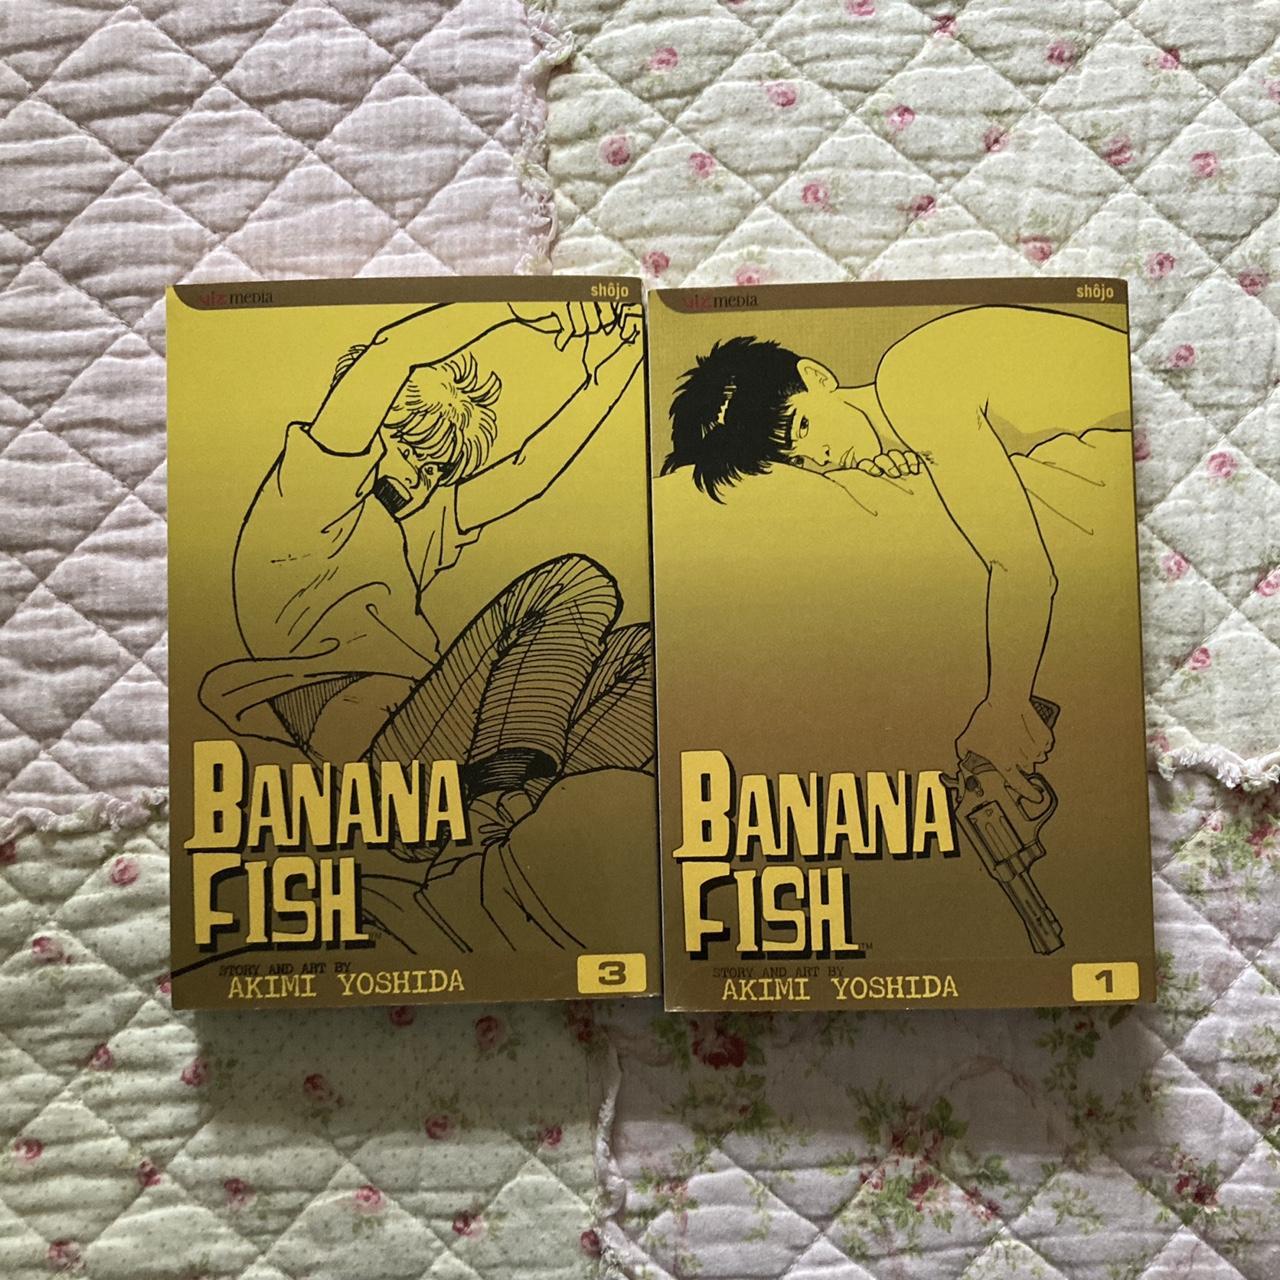 Banana Fish Manga Volume 3